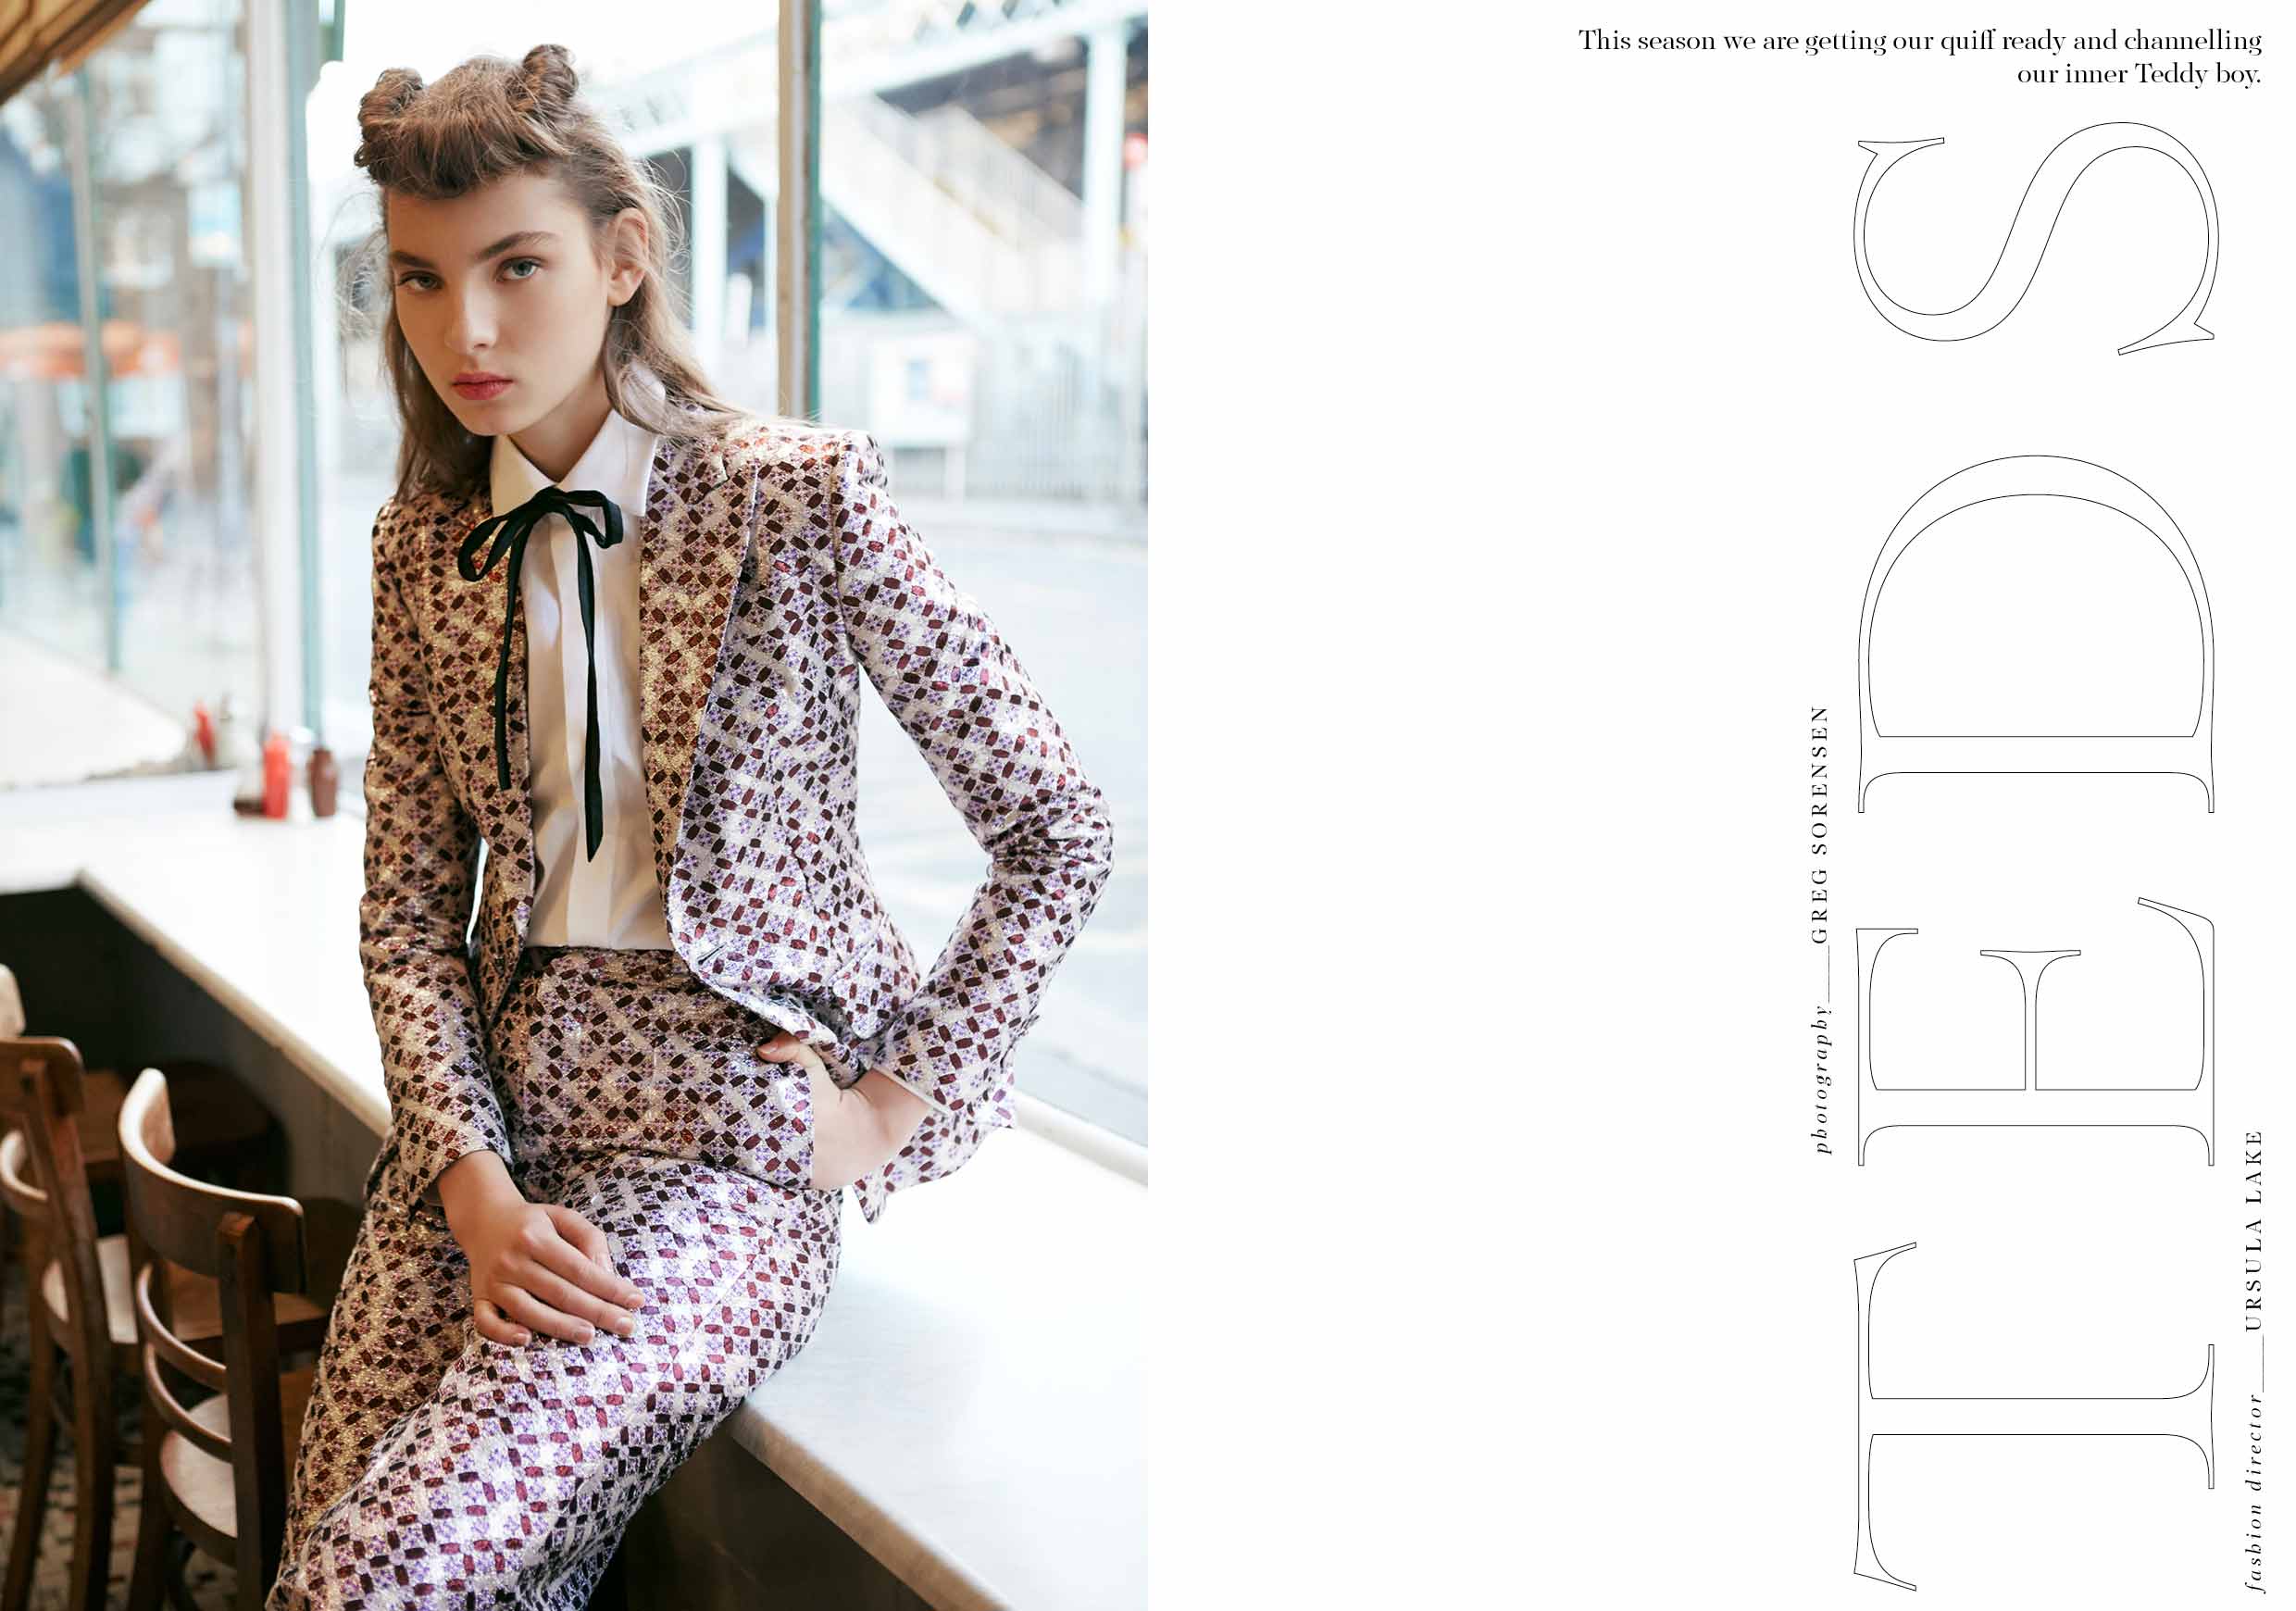 Teddy Boy Fashion Story - Make Magazine - Model Zhenya Migovych I Greg Sorensen I Fashion & Beauty Photographer I NYC